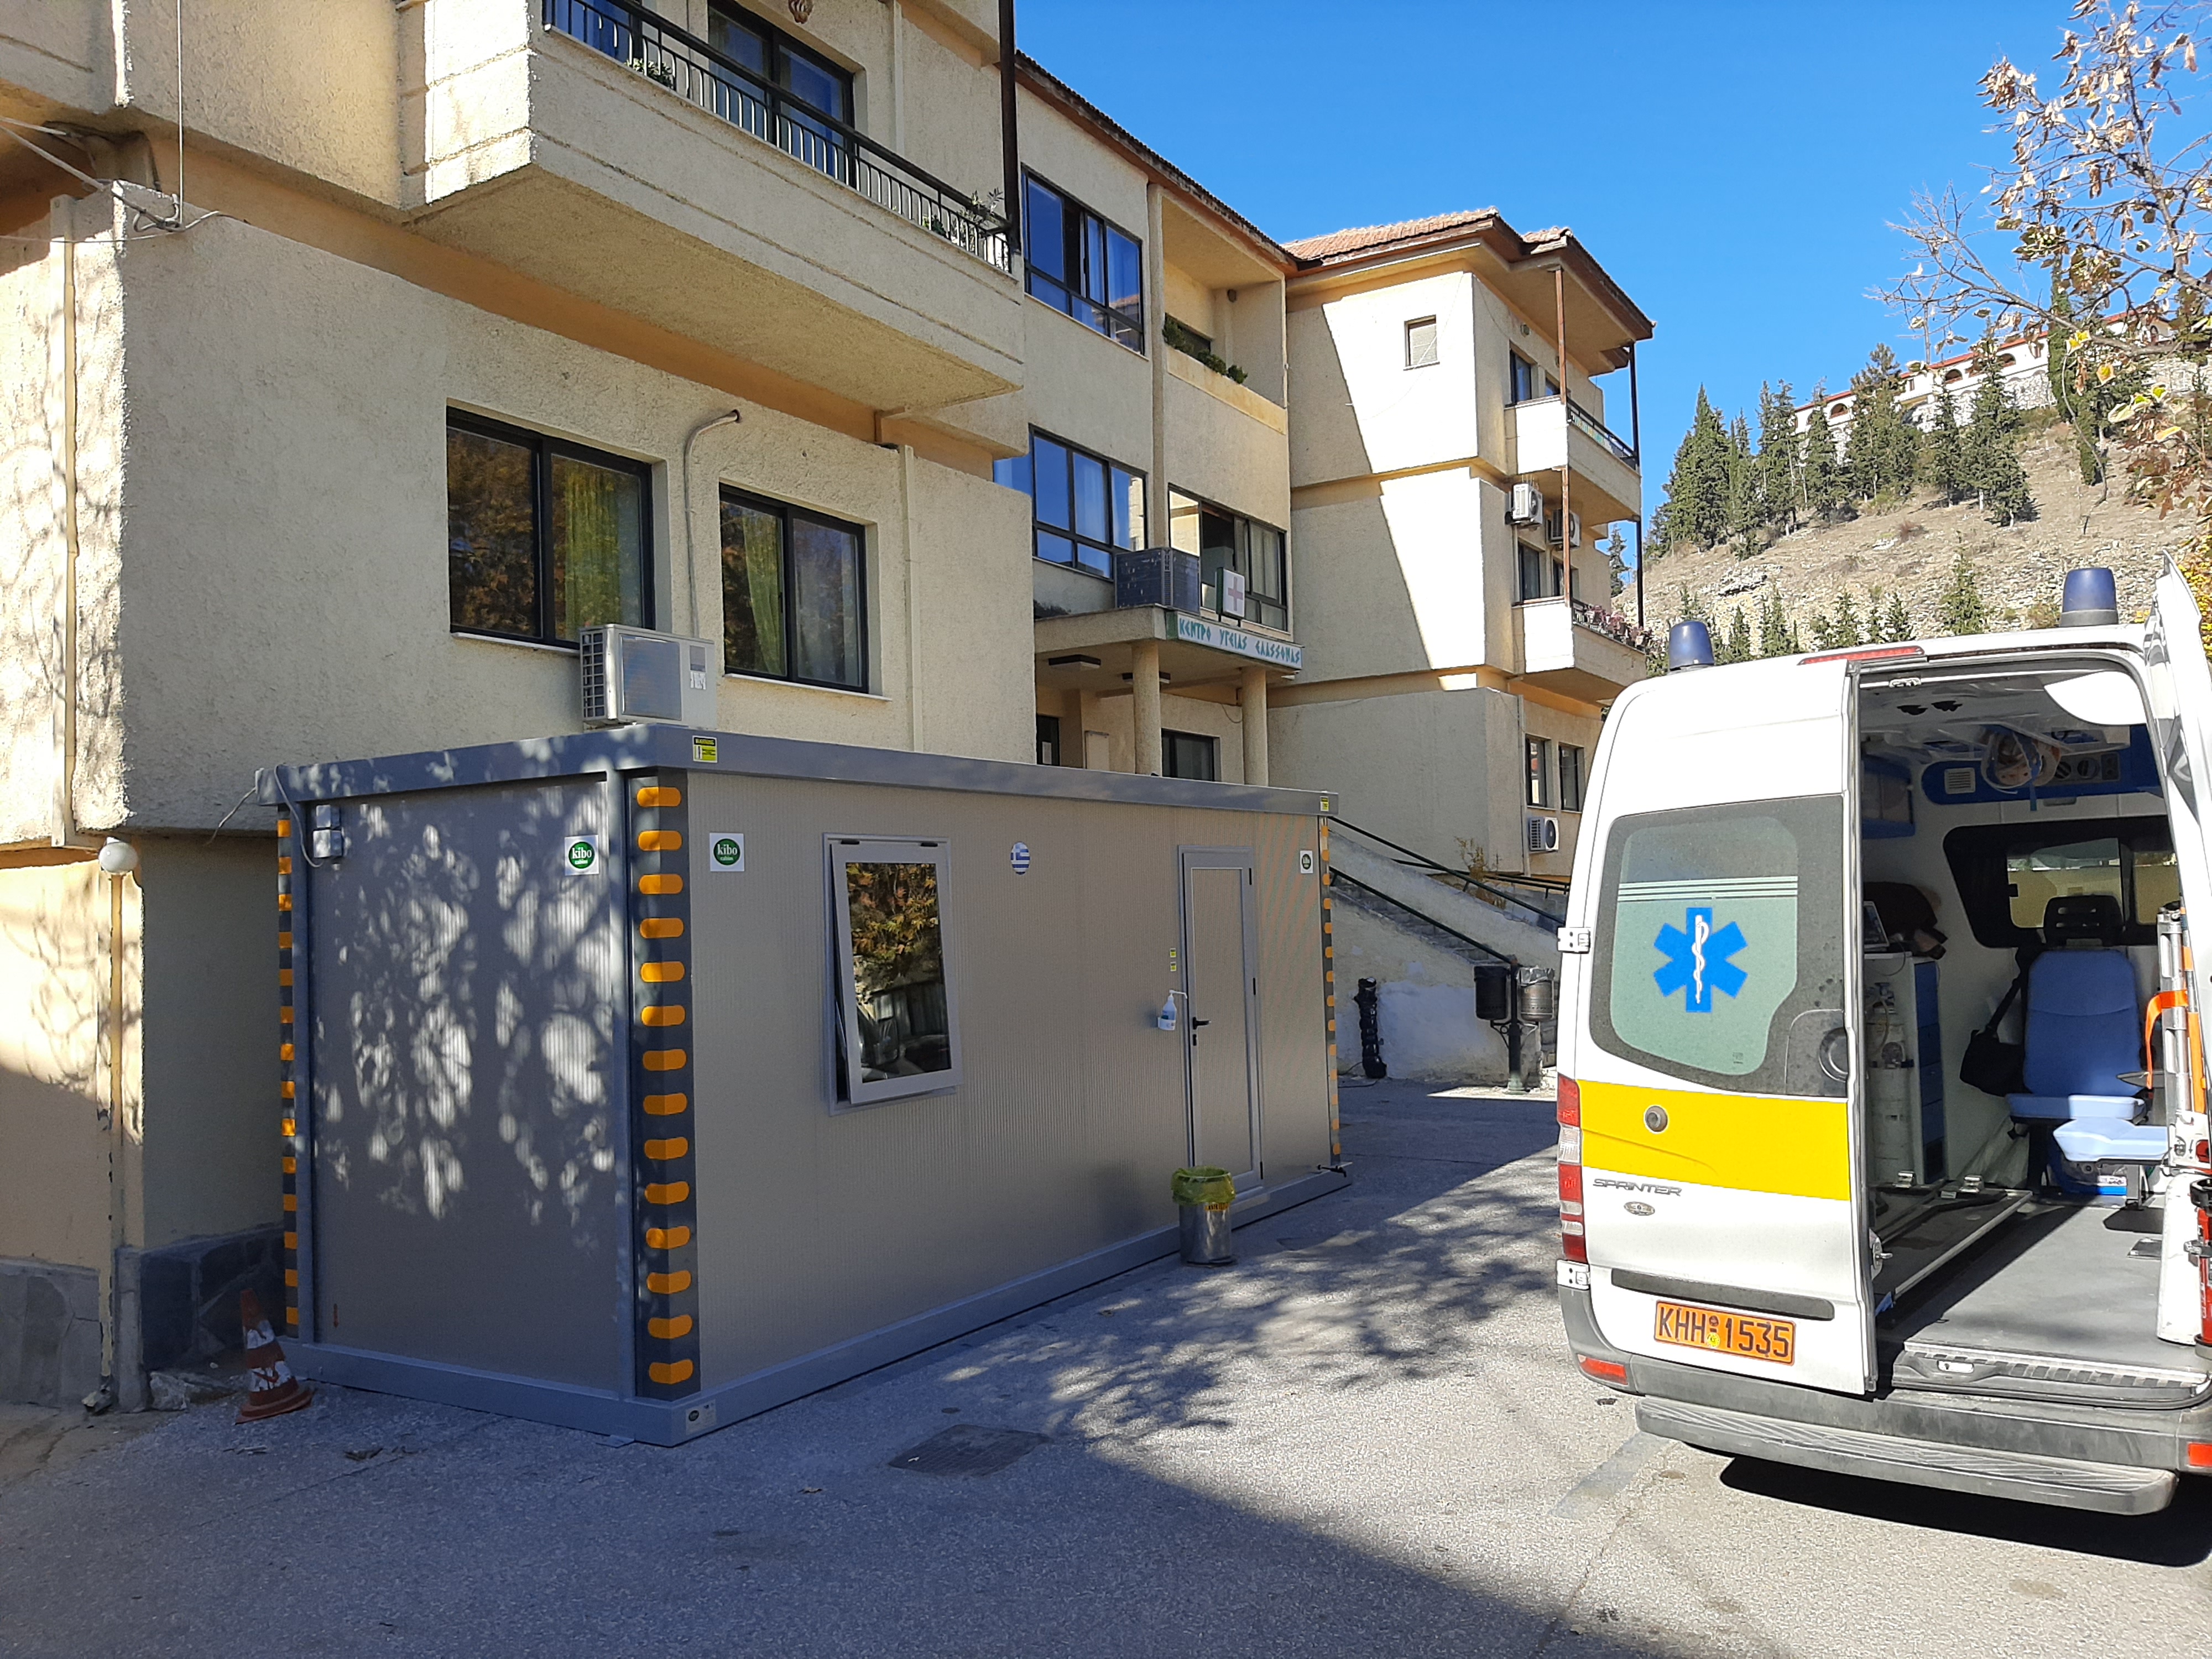 Δωρεά προκατασκευασμένου οικίσκου στο Κέντρο Υγείας από το Δήμο Ελασσόνας